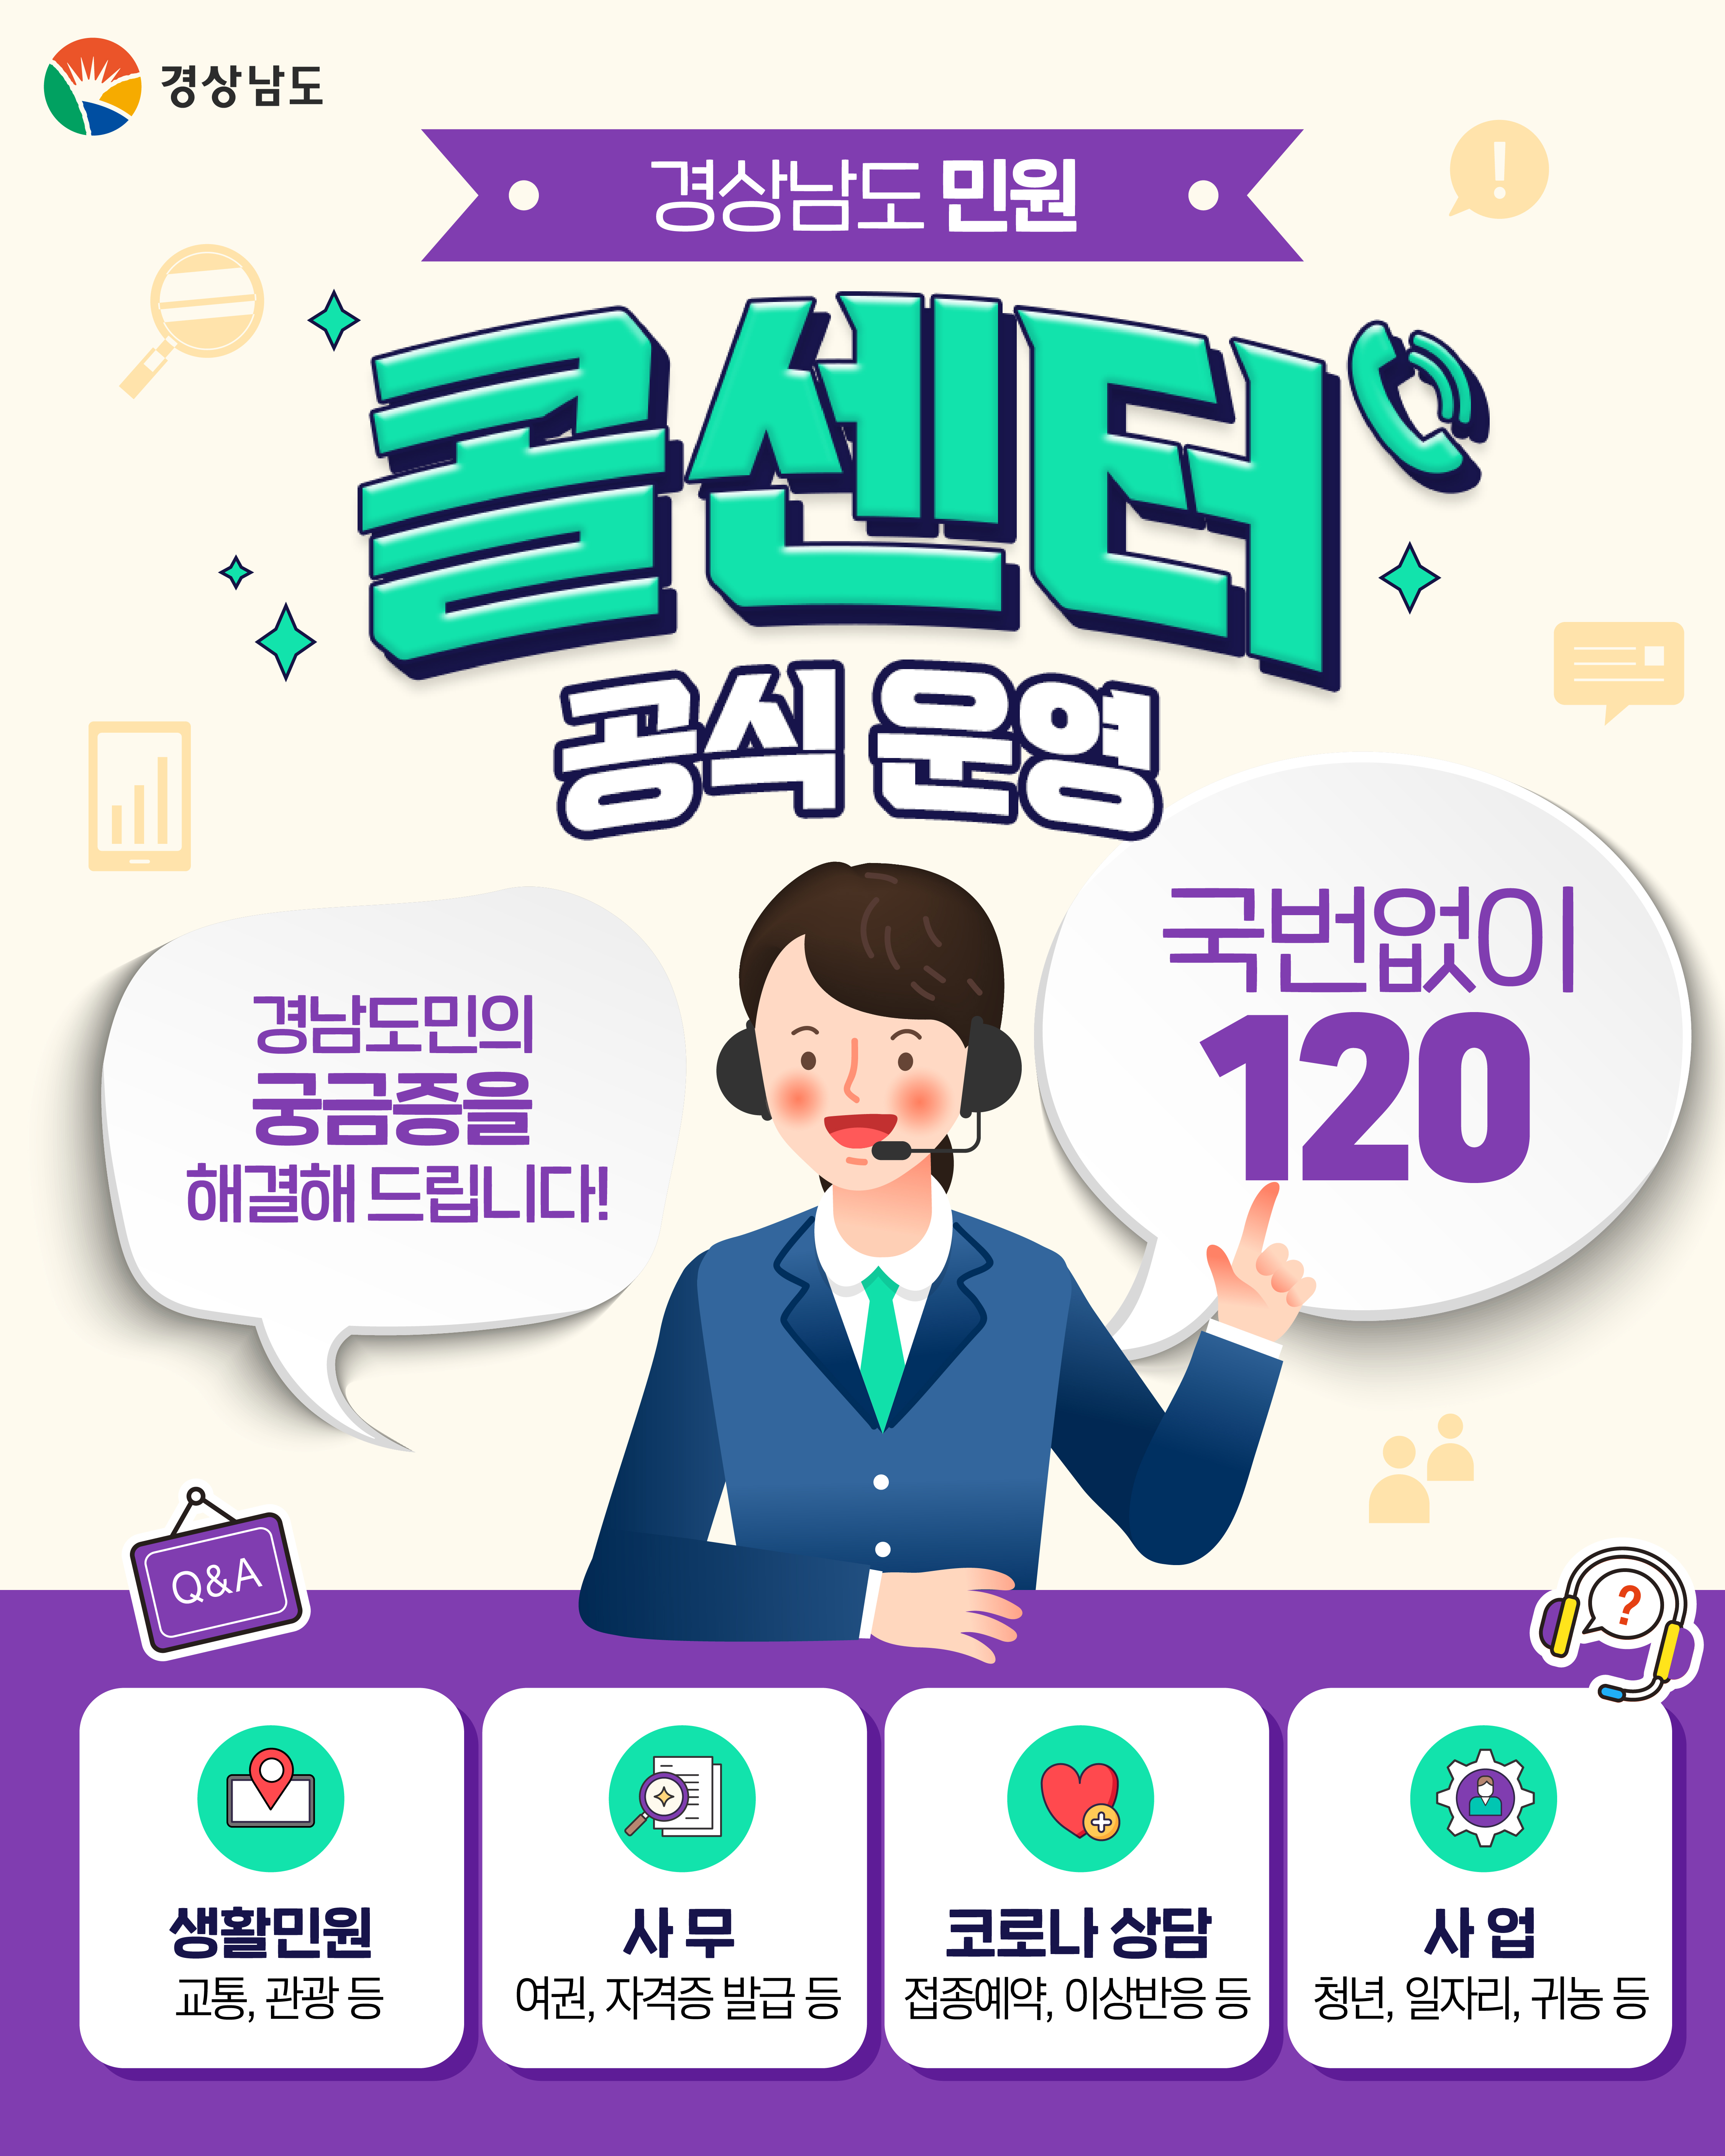 「경상남도 민원 콜센터」운영 홍보 및 이용안내 3